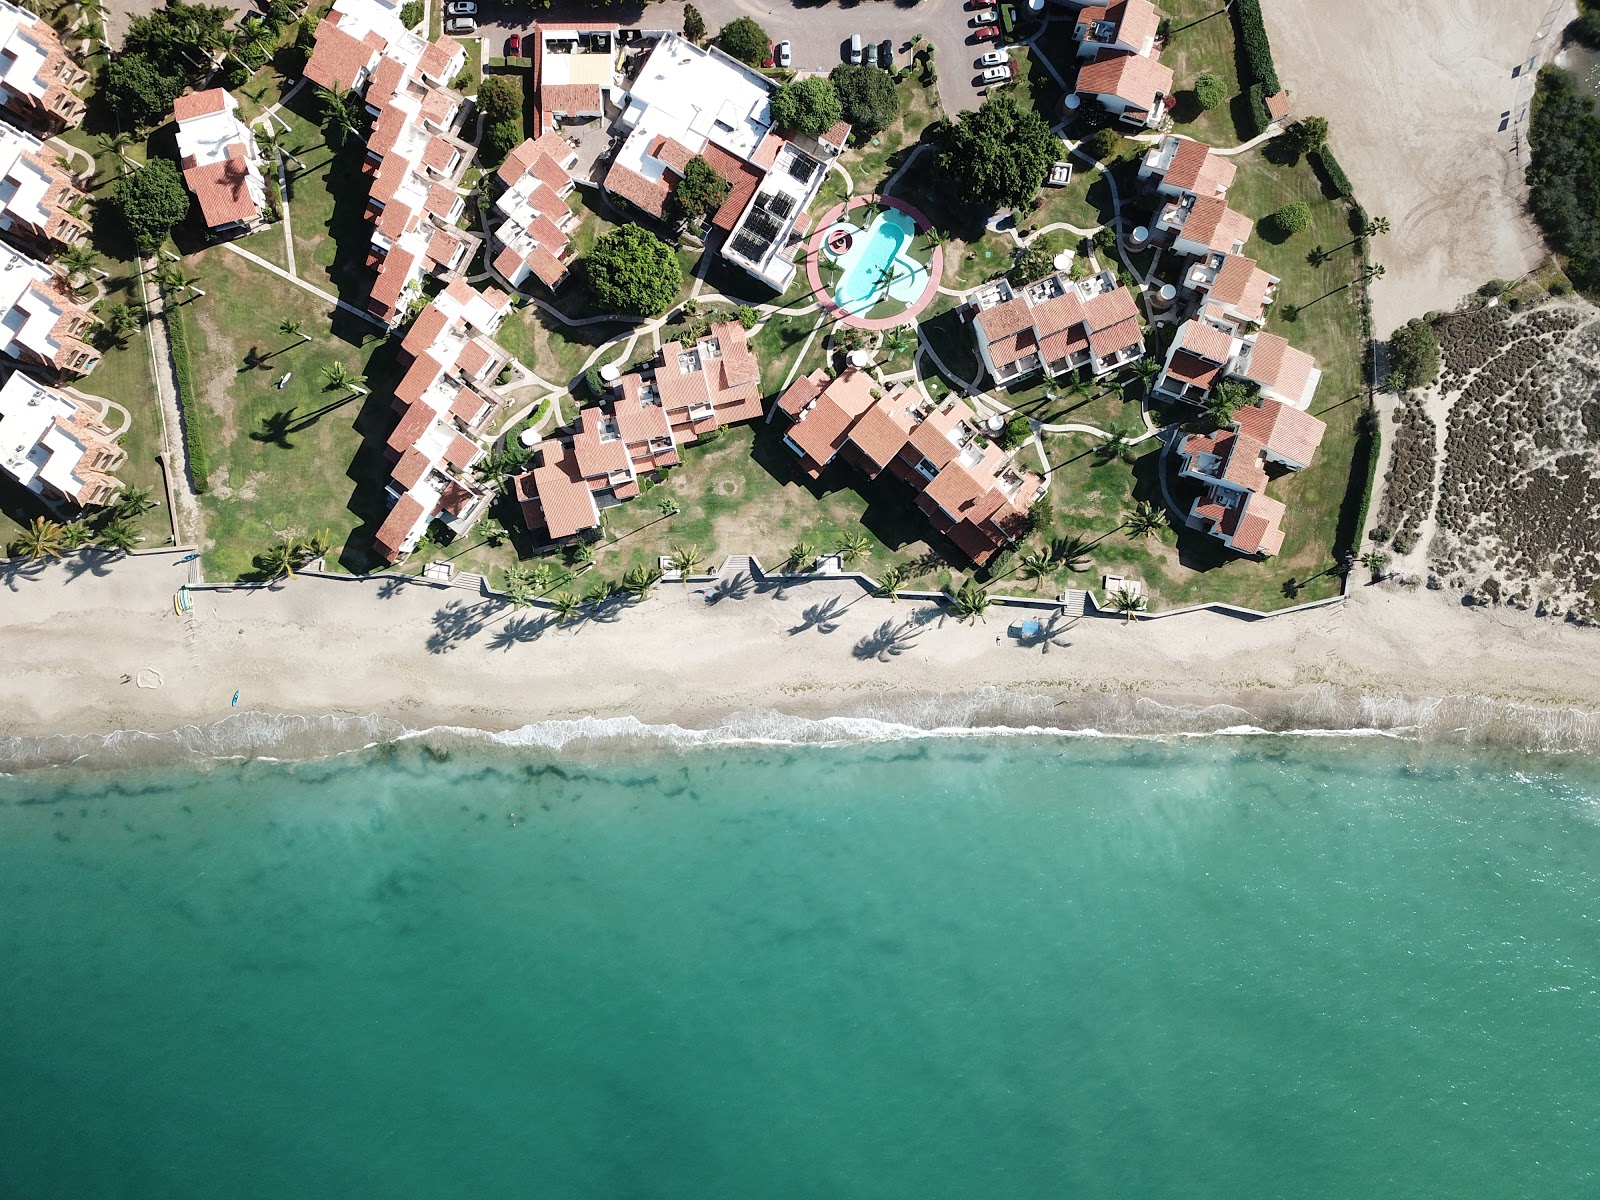 Zdjęcie Playa San Carlos - popularne miejsce wśród znawców relaksu